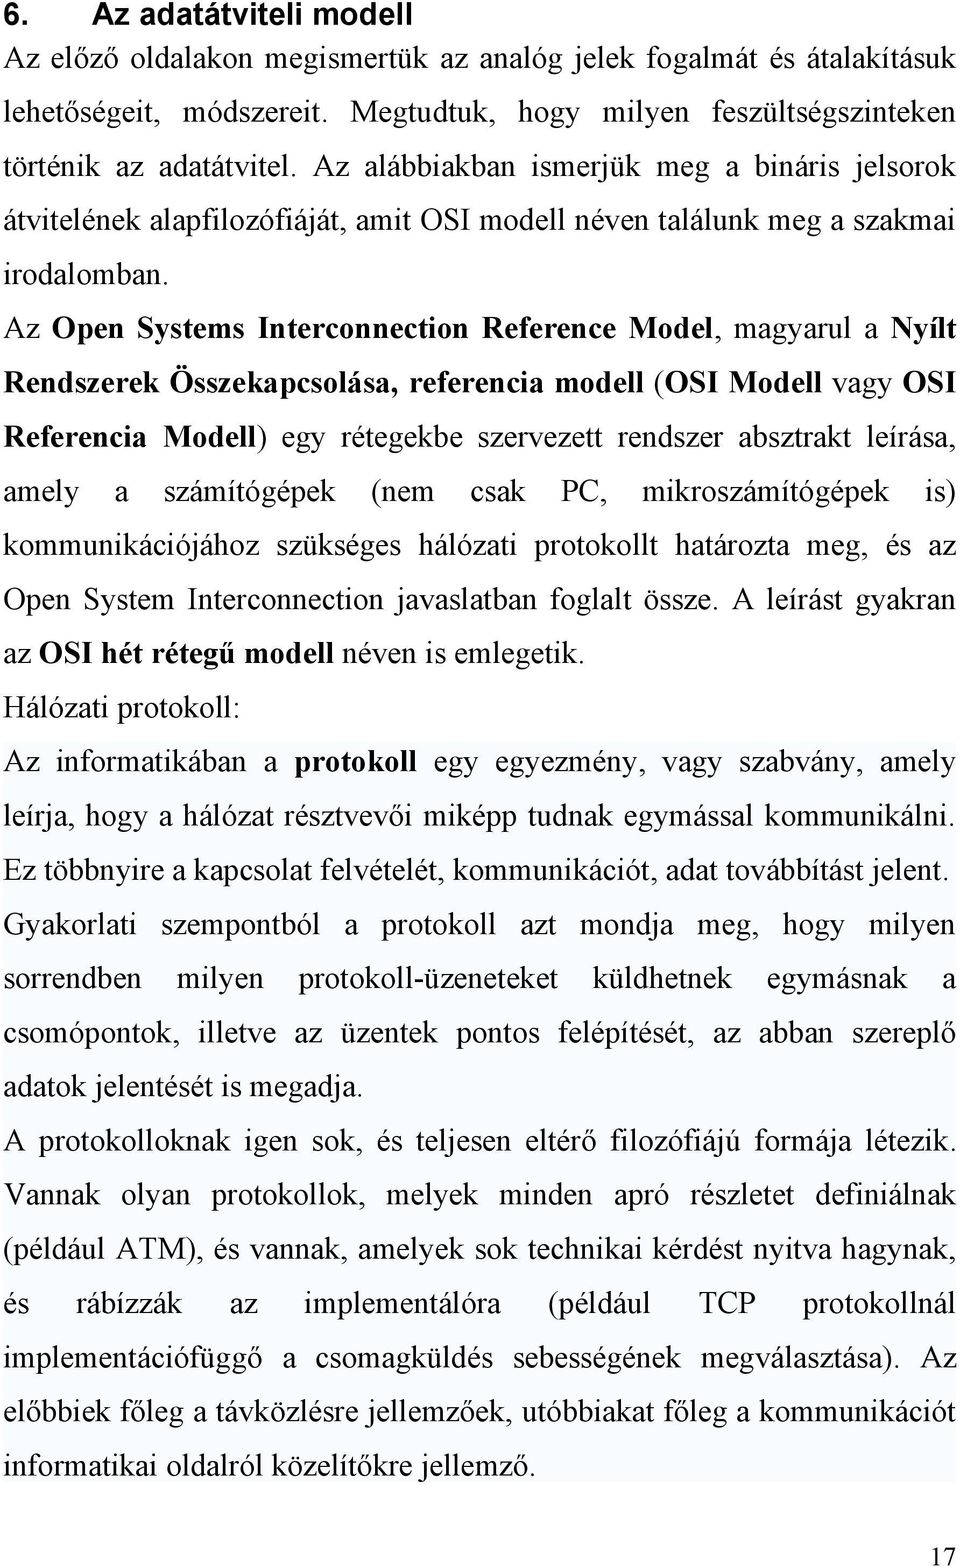 Az Open Systems Interconnection Reference Model, magyarul a Nyílt Rendszerek Összekapcsolása, referencia modell (OSI Modell vagy OSI Referencia Modell) egy rétegekbe szervezett rendszer absztrakt